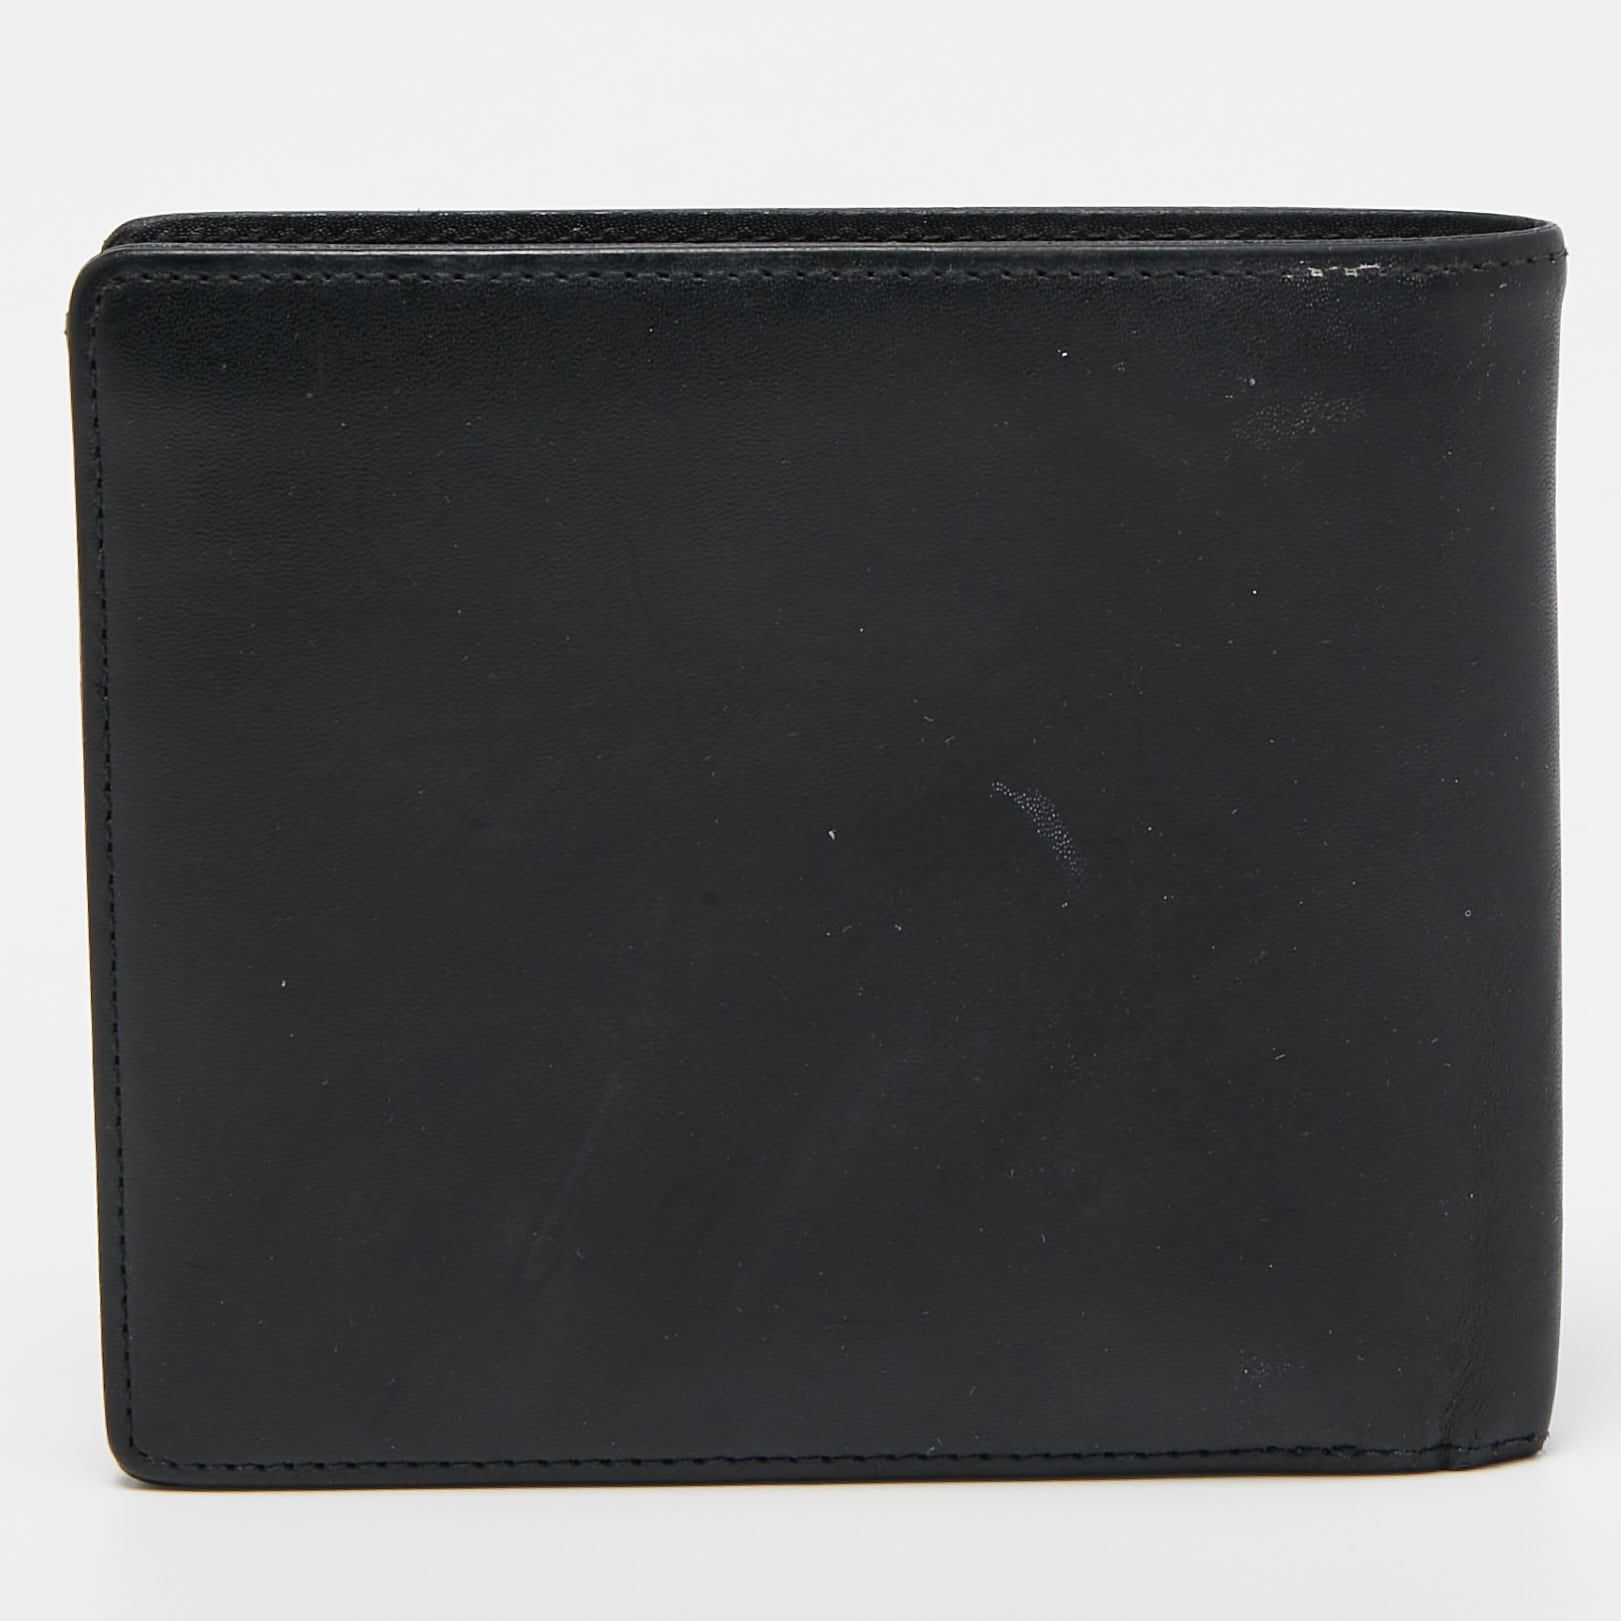 Porsche Design Black Leather P3300 Bifold Wallet